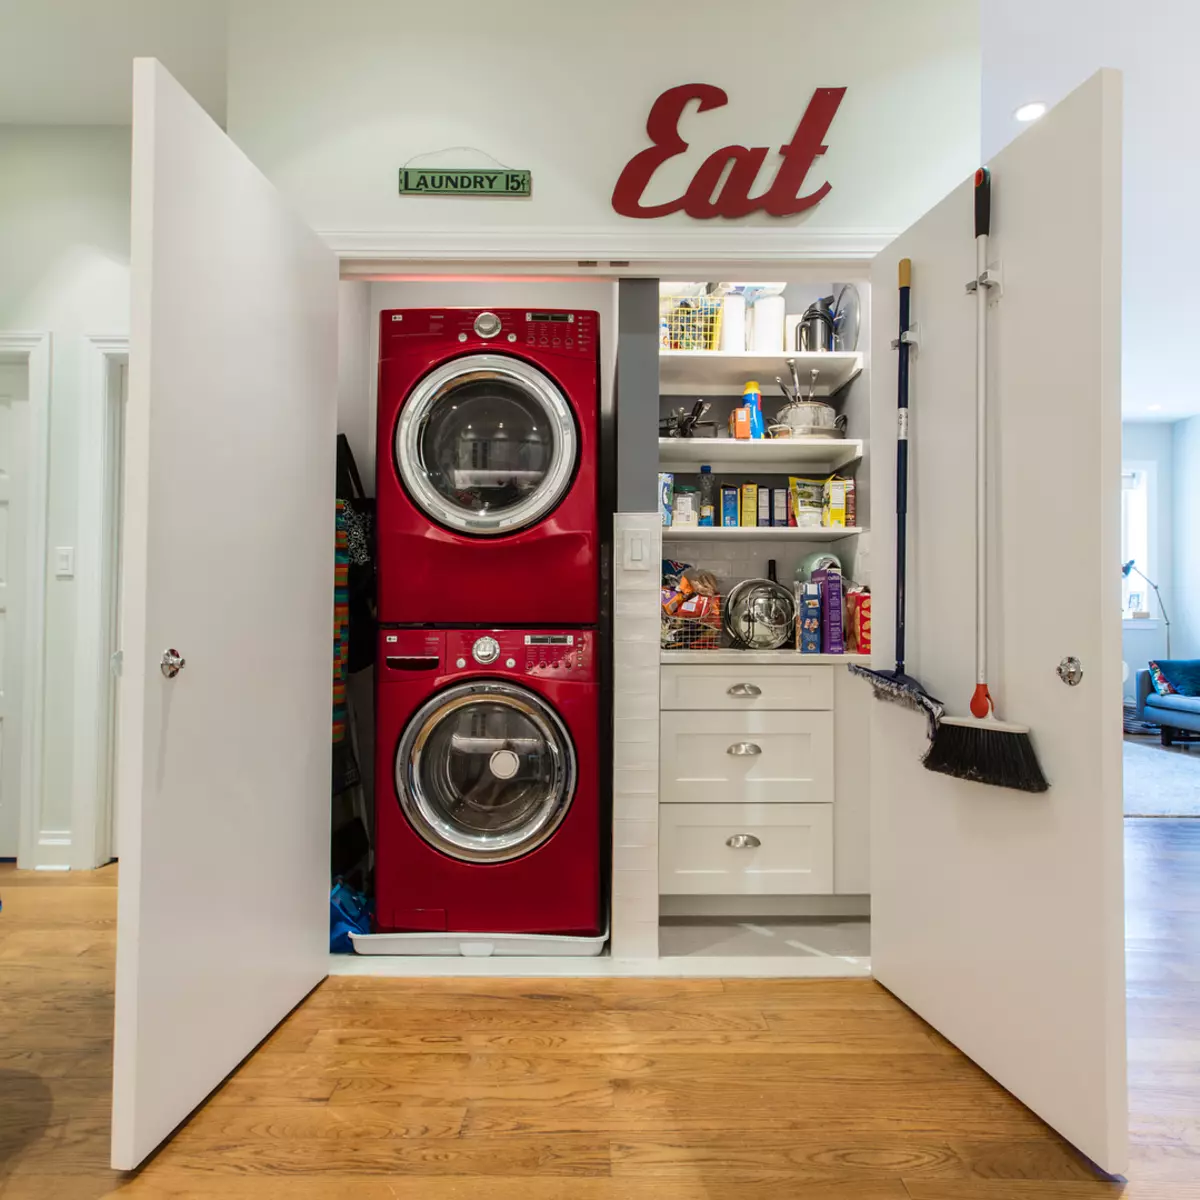 Minitu-Laundry sa usa ka gamay nga apartment: litrato